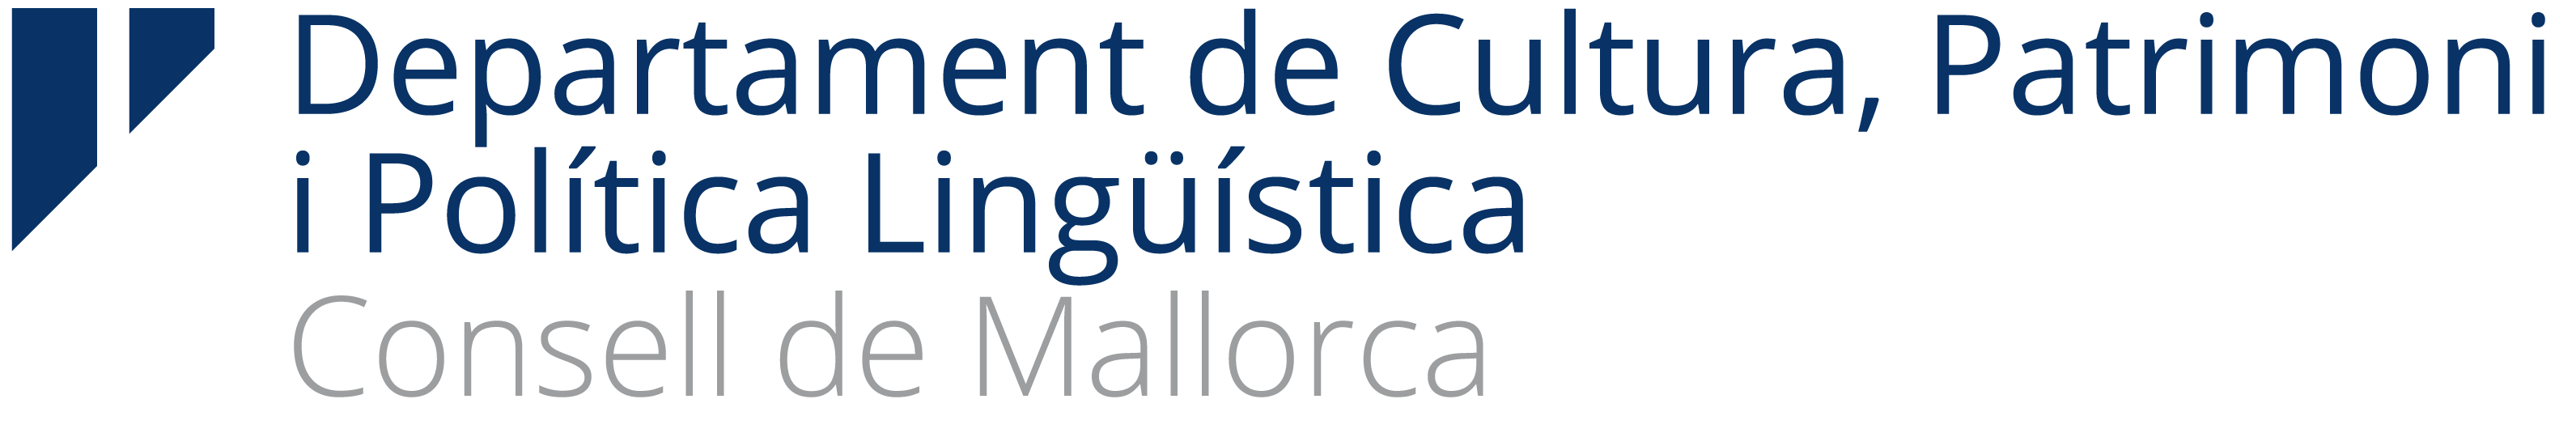 Departament de Cultura. Consell de Mallorca.